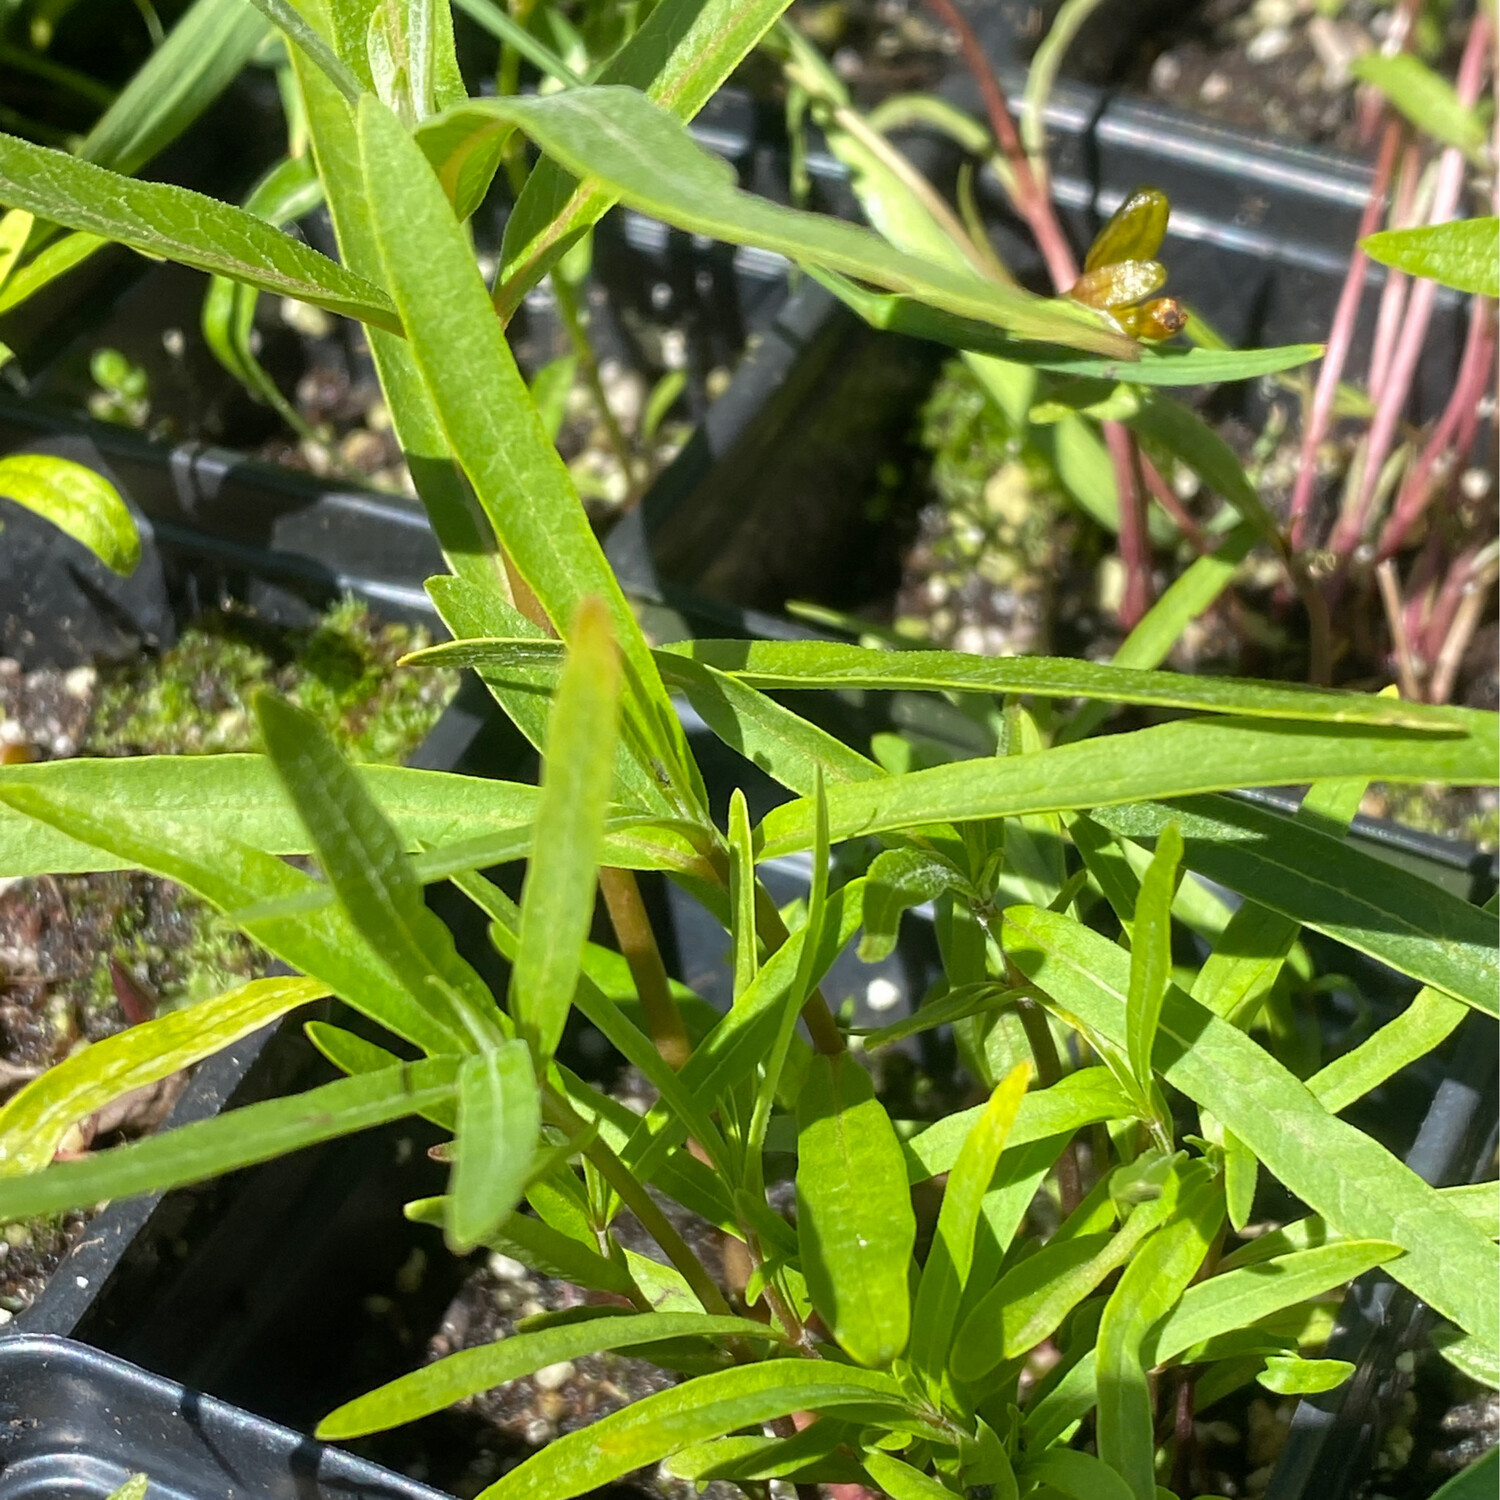 Asclepias speciosa - Showy Milkweed